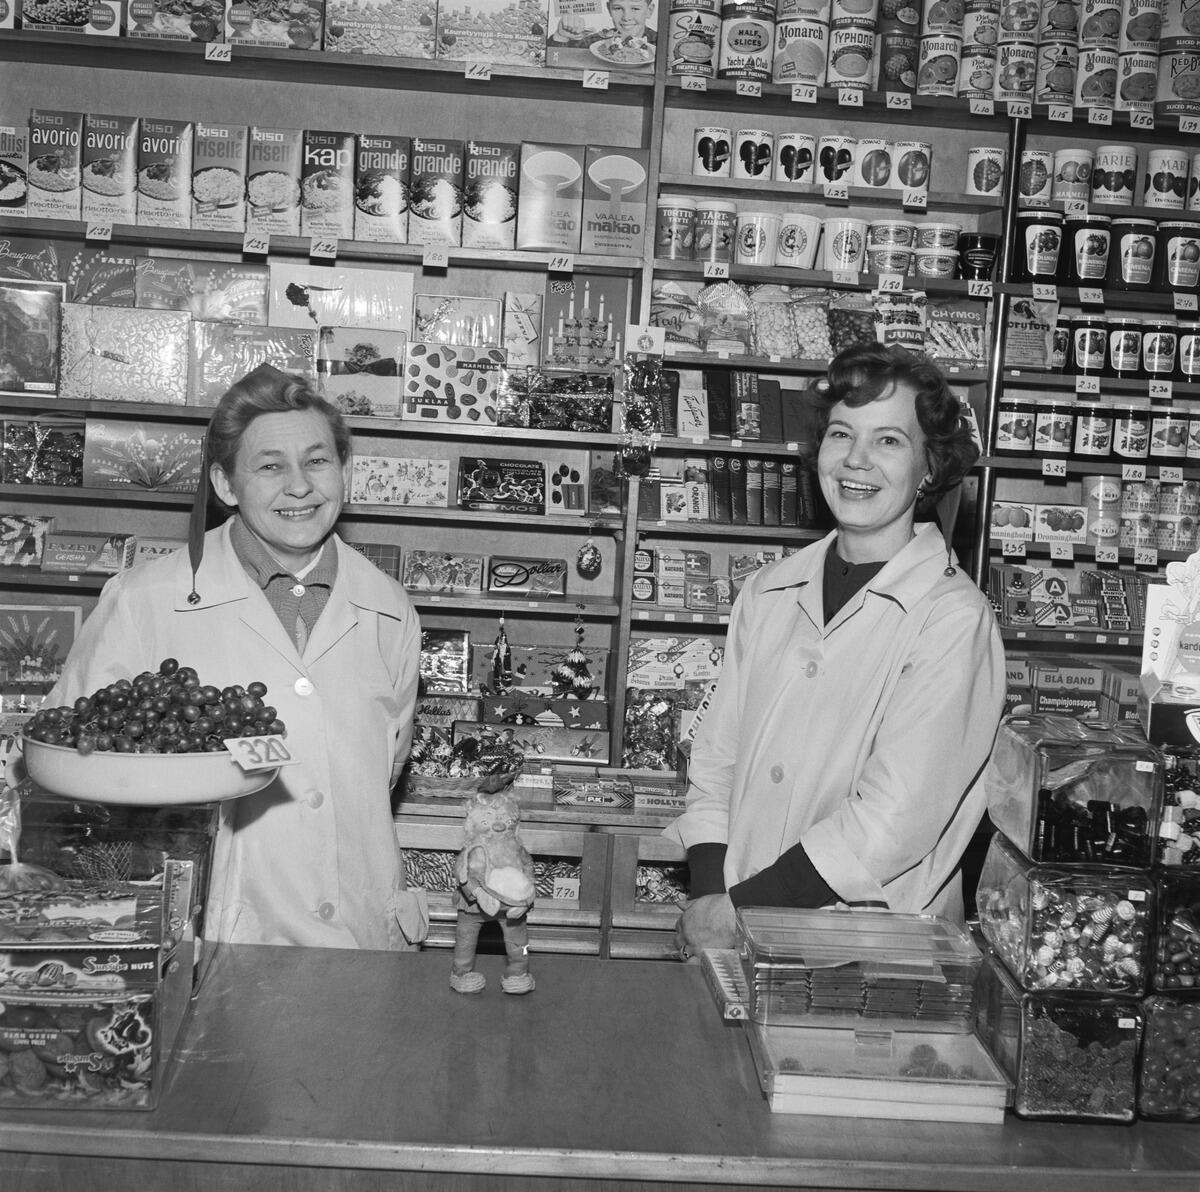 Kaksi hymyilevää naista seisoo kaupan tiskin takana. Toisella on tonttulakki päässään ja viinirypälevati kädessään. Naisten takana on hyllyjä täynnä ruokapakkauksia ja konvehtirasioita.